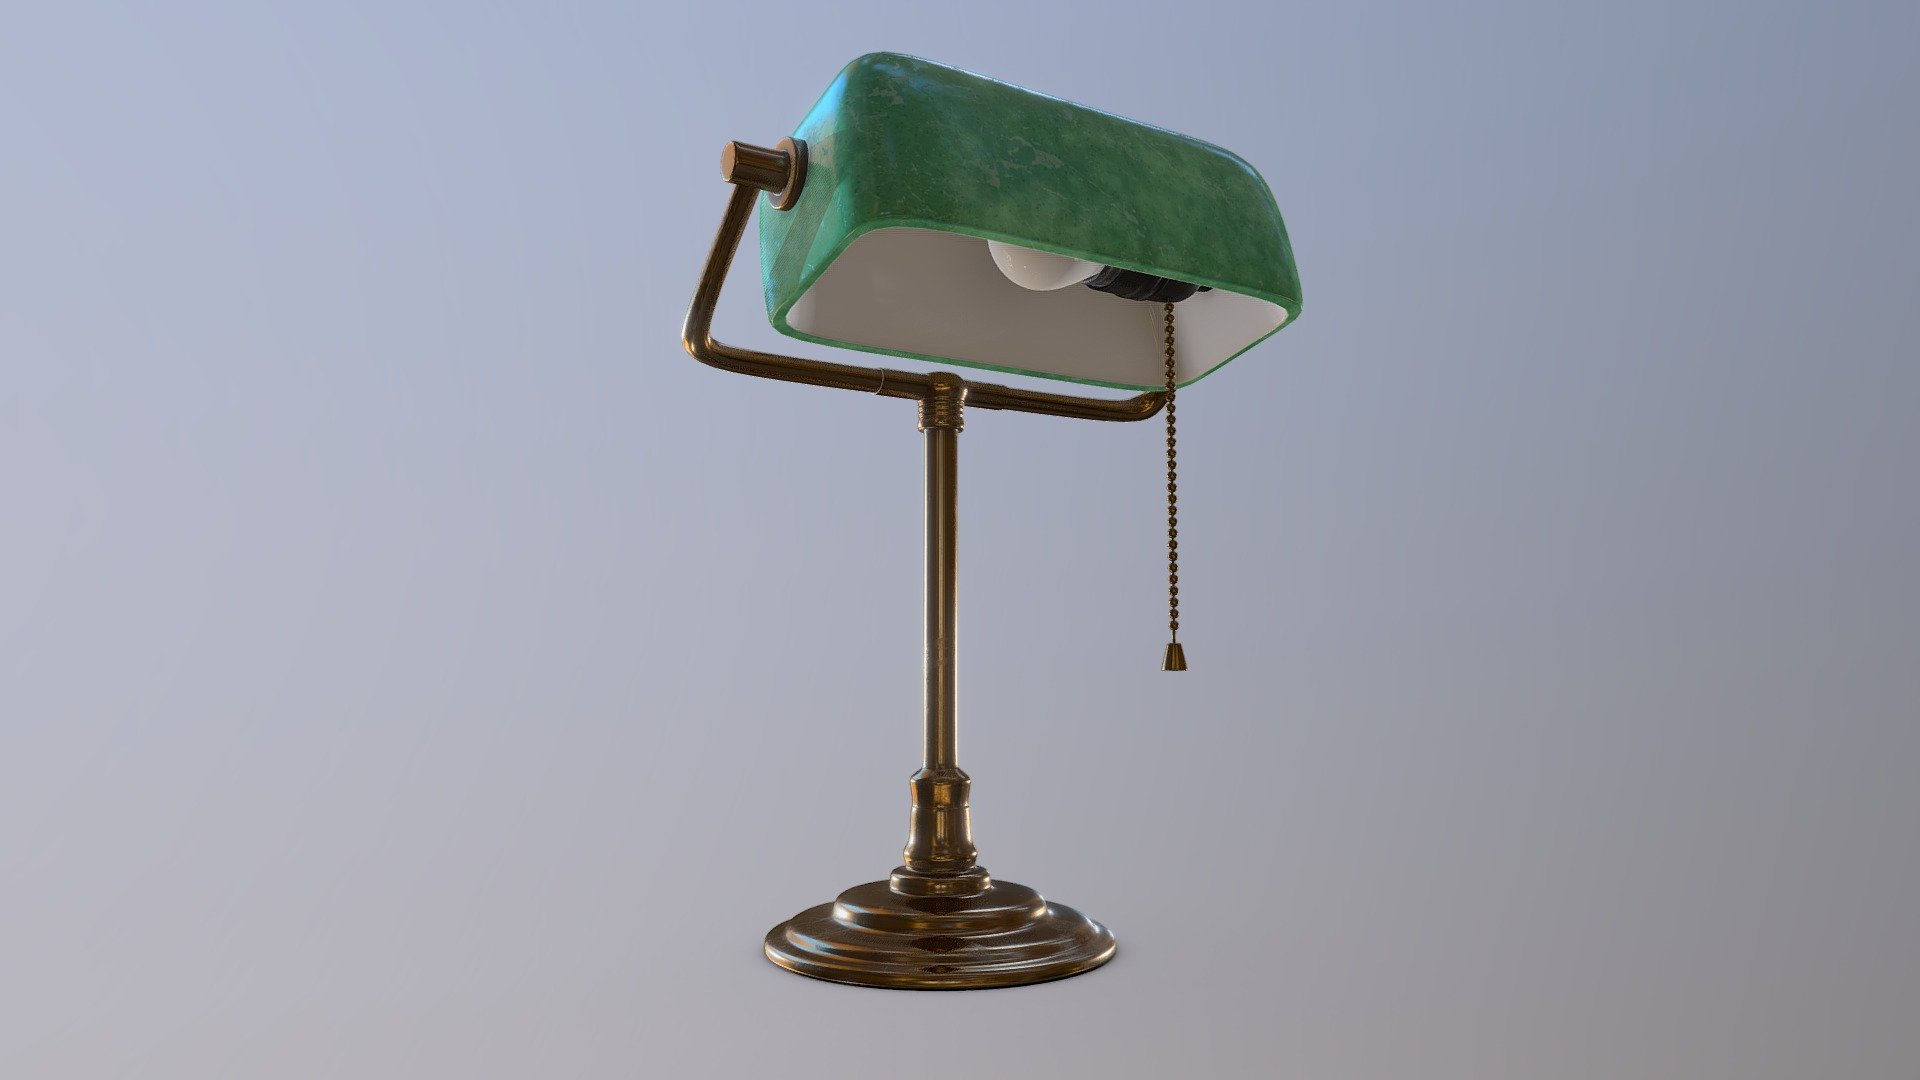 vintage desk lamp